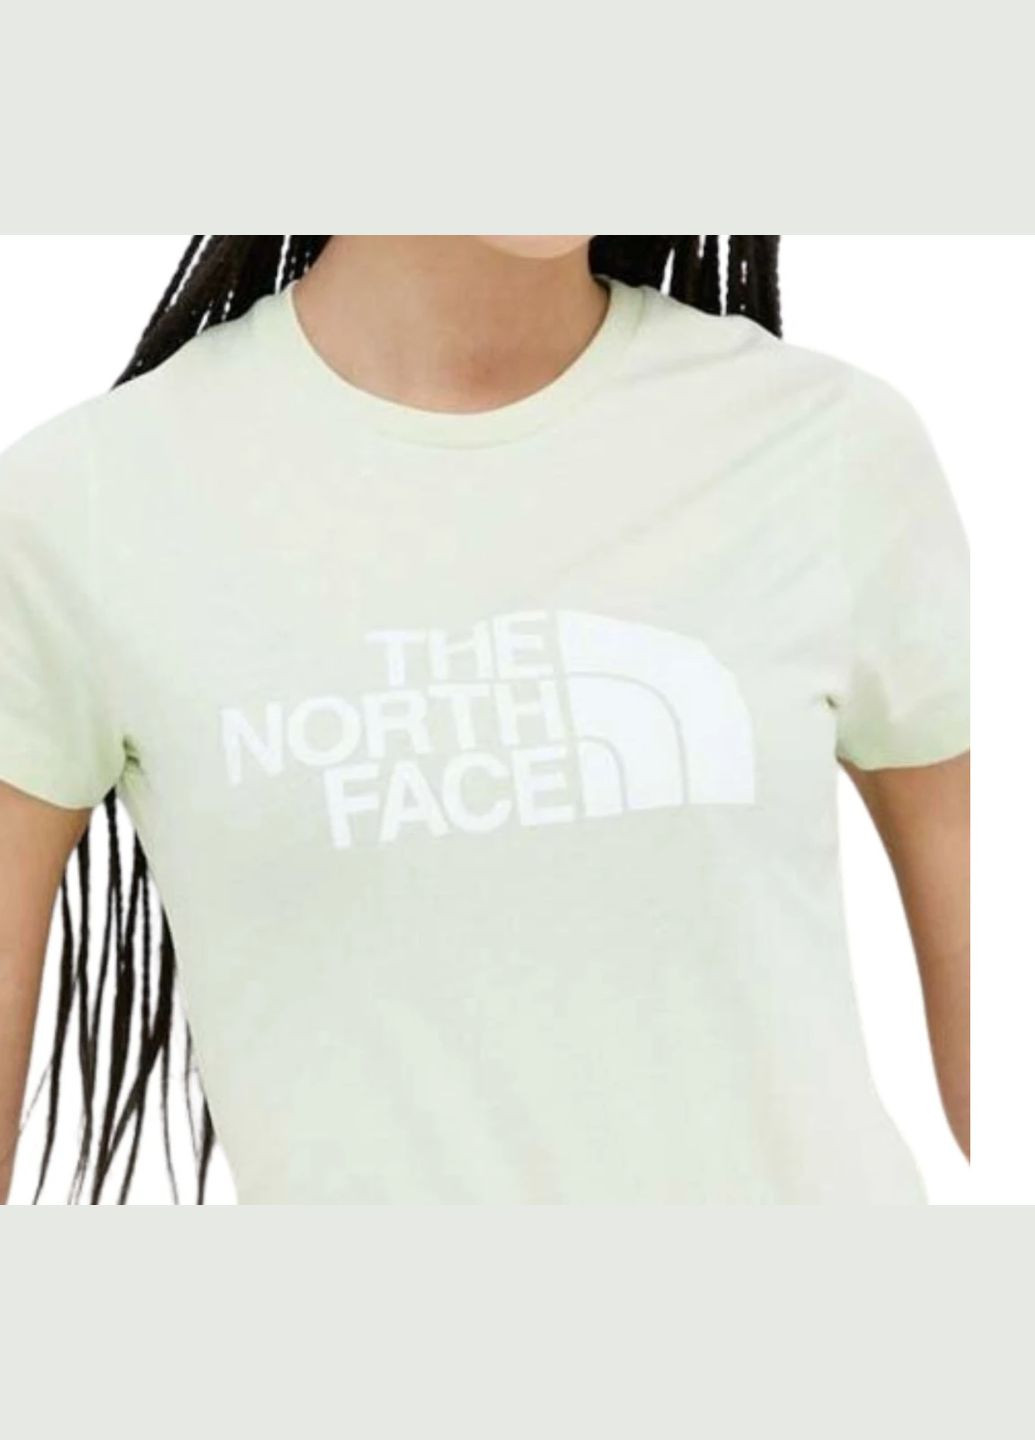 Салатовая демисезон футболка w easy tee с коротким рукавом The North Face